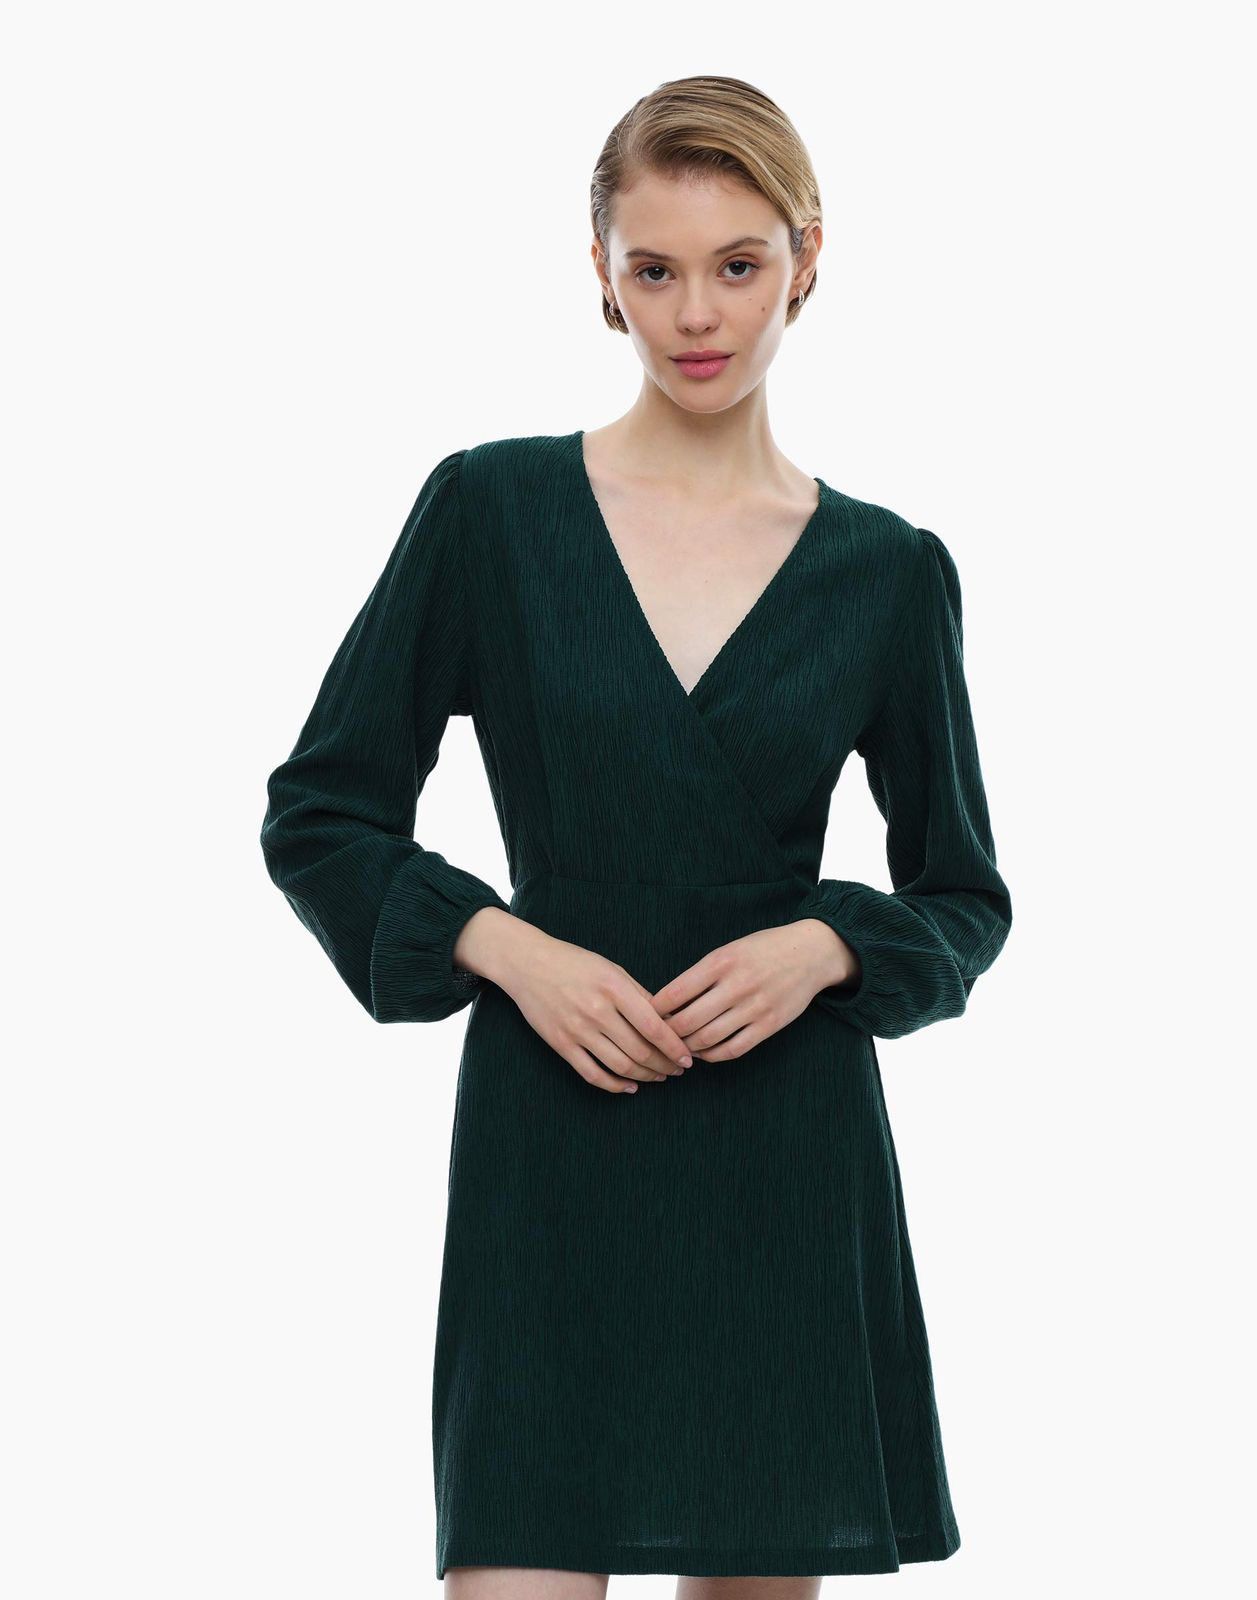 Платье женское Gloria Jeans GDR028010 зеленое L (48-50)